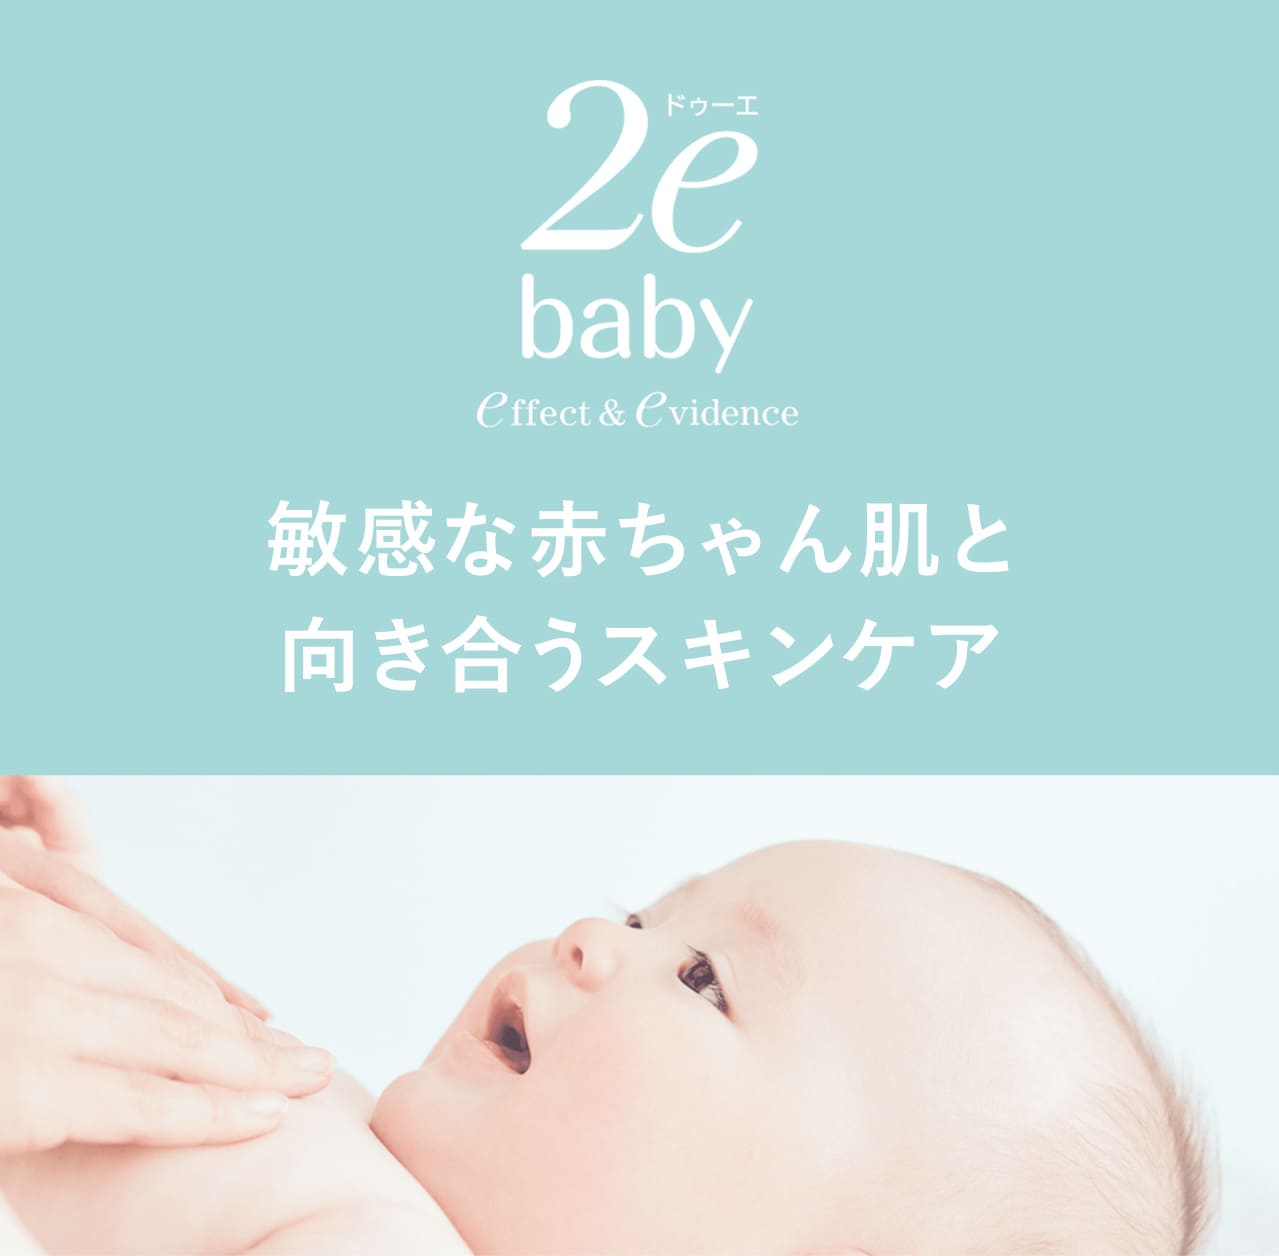 タメせる！資生堂ジャパン「2e（ドゥーエ）敏感な赤ちゃん肌と向き合うスキンケアセット」